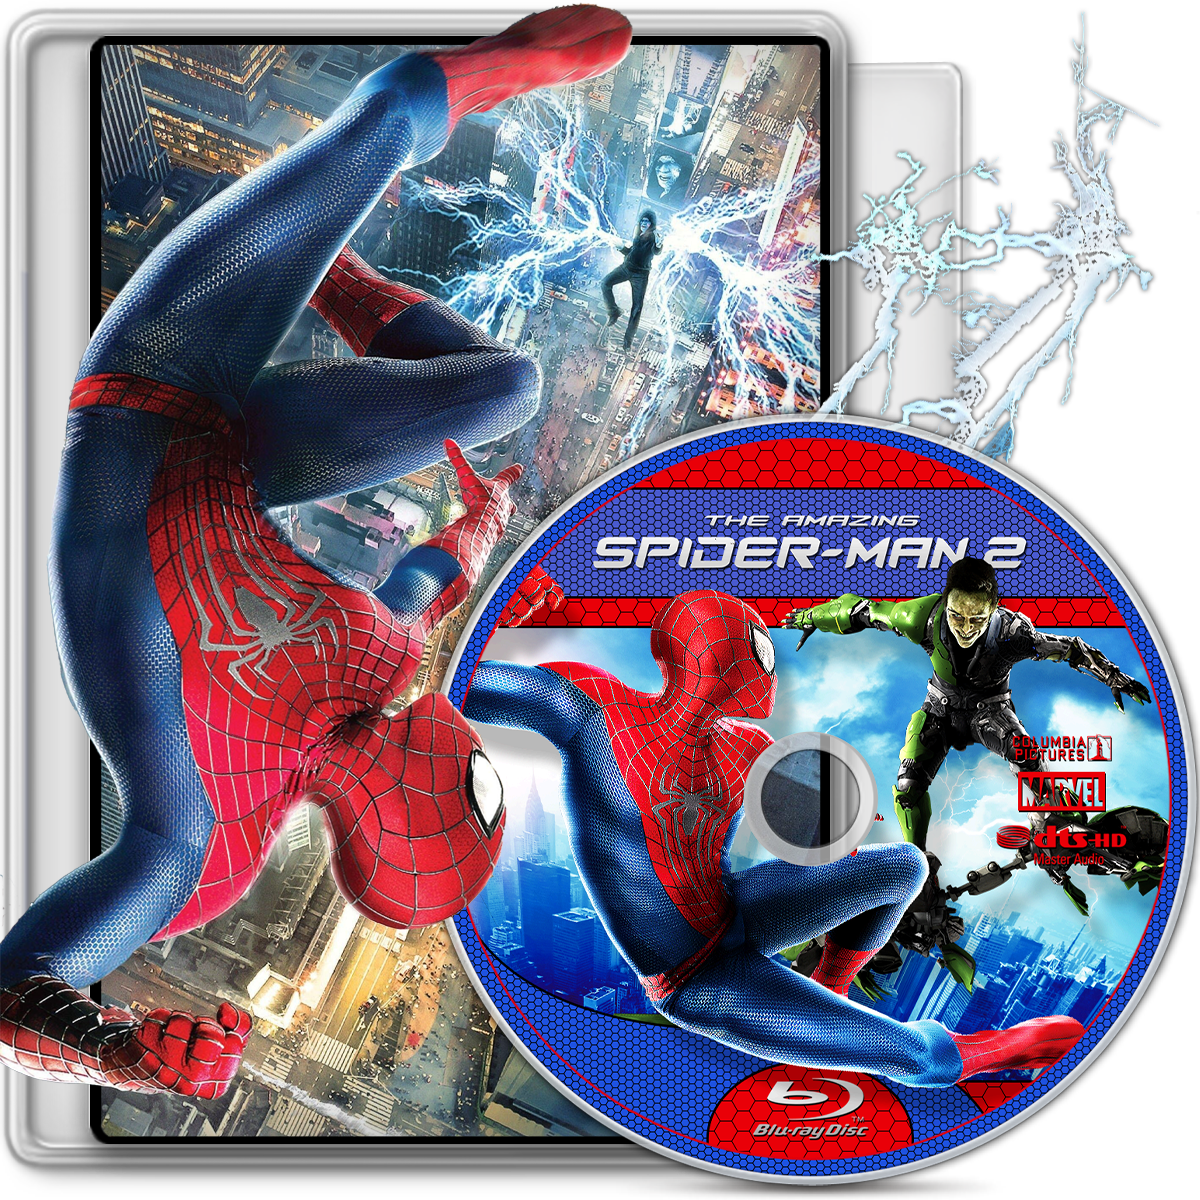 Spider-man 2 2004 by nes78 on DeviantArt